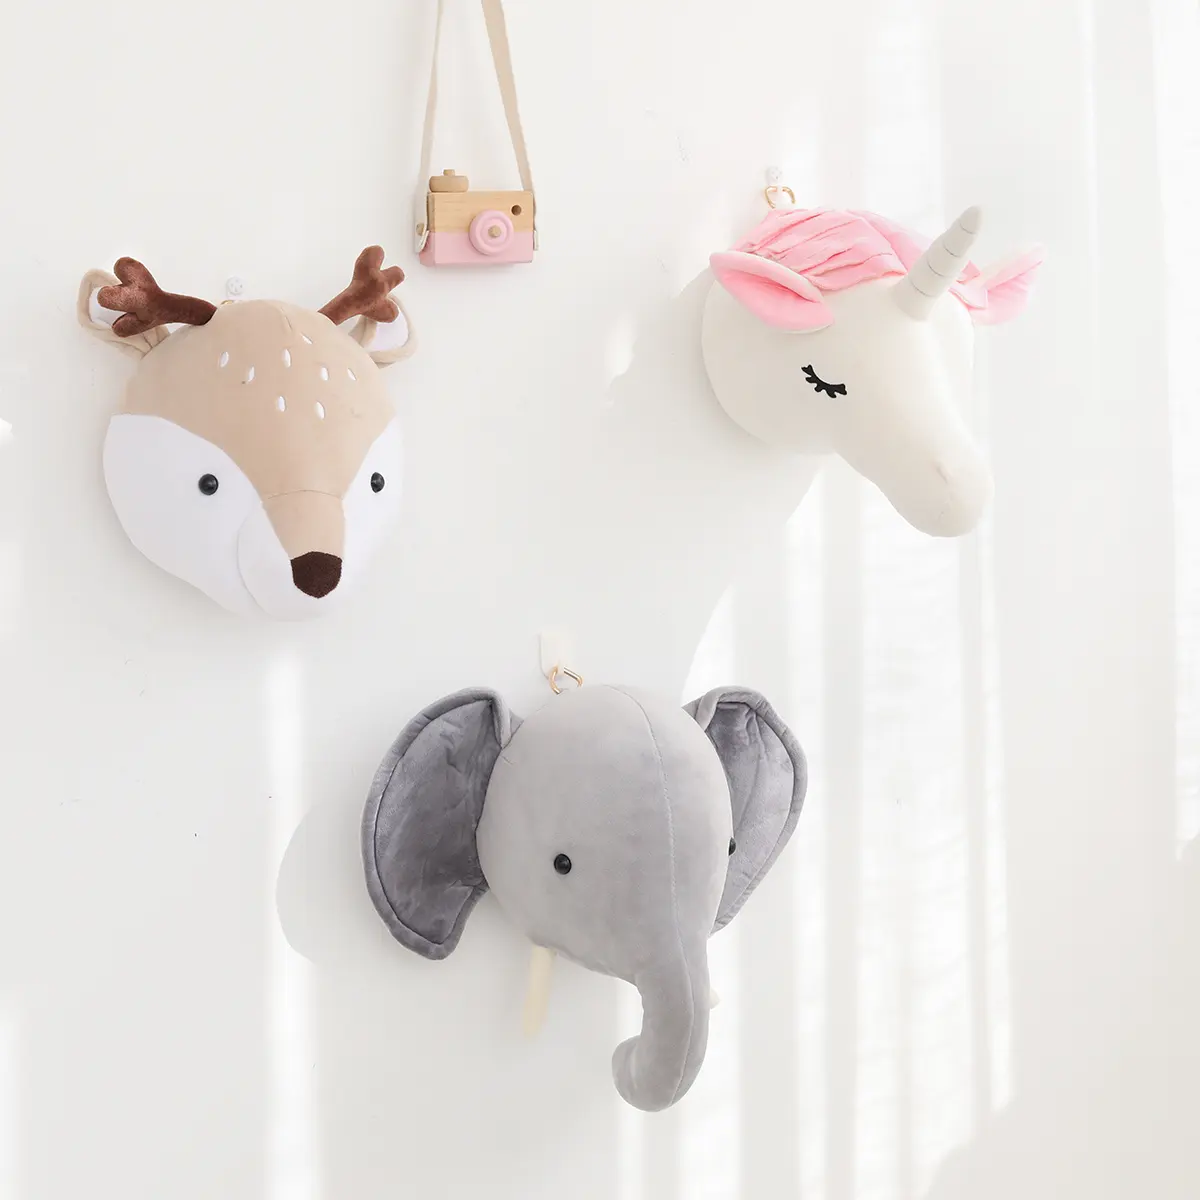 रचनात्मक नॉर्डिक दीवार फांसी गेंडा हाथी पशु सिर के लिए यूरो शैली आलीशान खिलौना गुड़िया बच्चे के कमरे सजावट